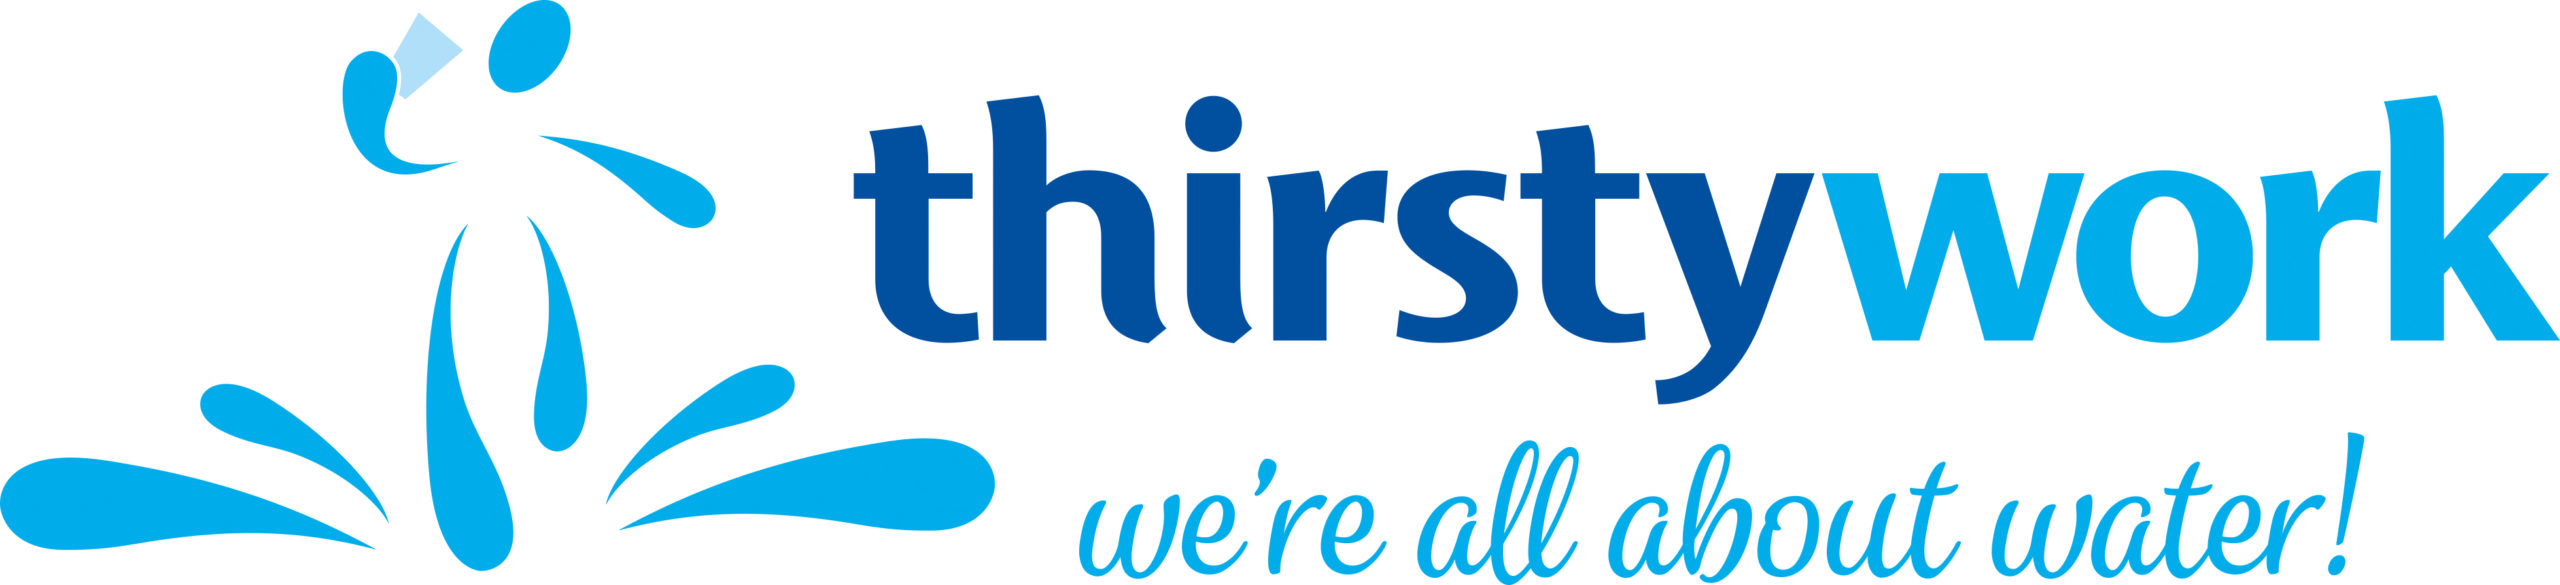 Thirsty Work Logo 2018-landscape